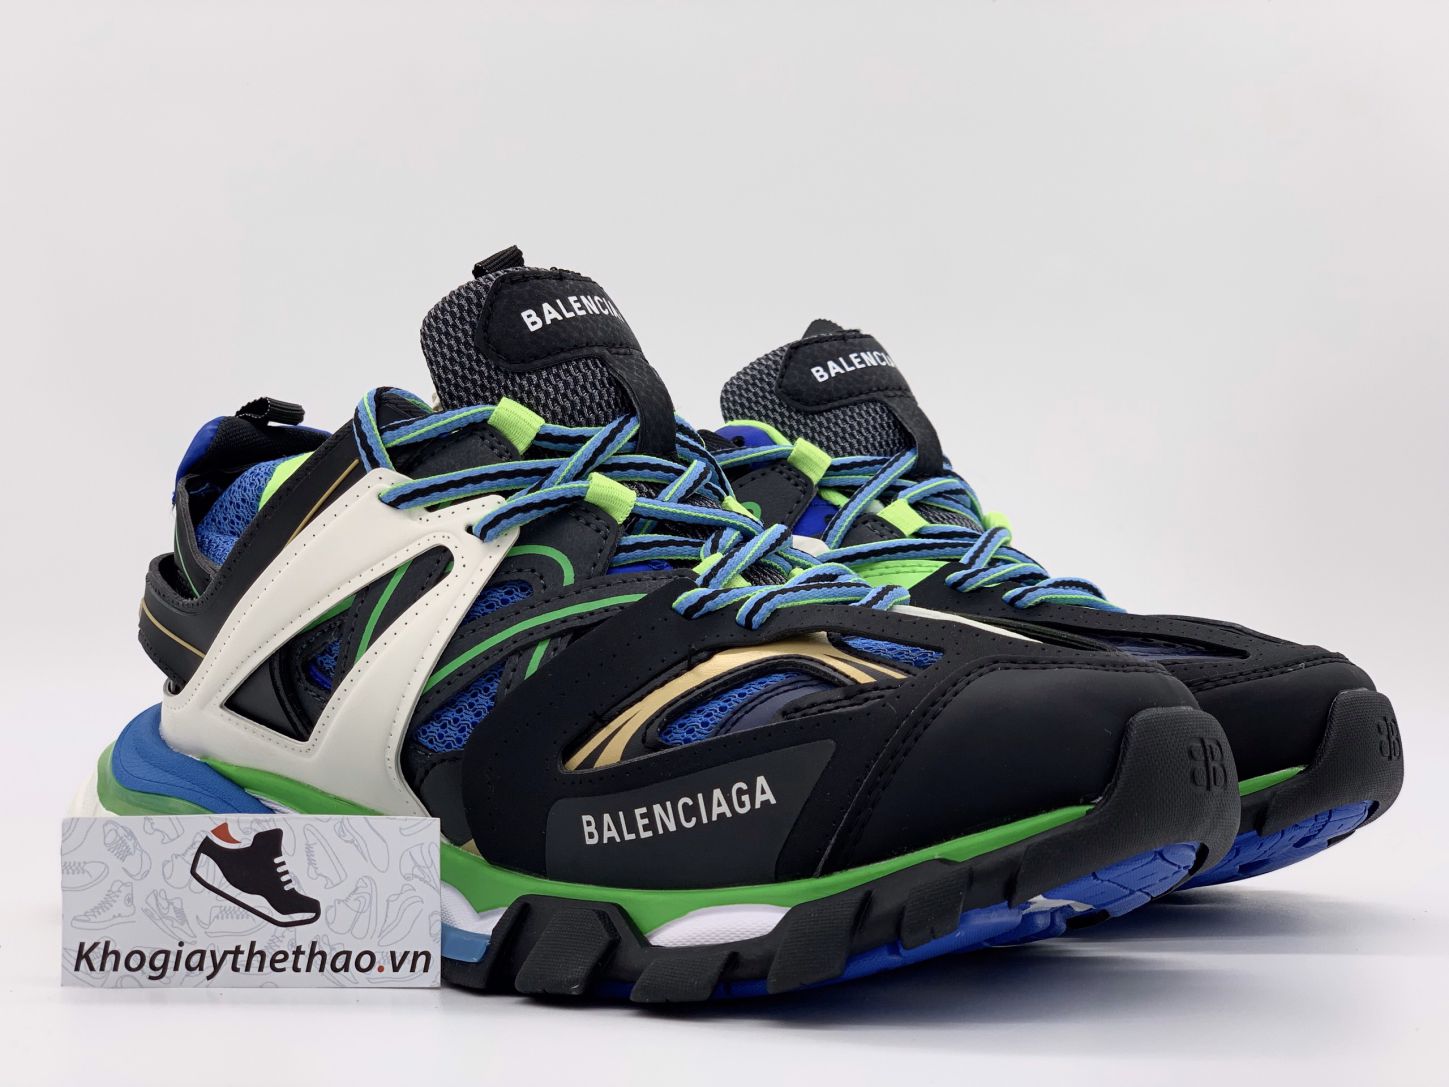 Giày Balenciaga Track Black Full đen Rep 11 màu sắc ấn tượng